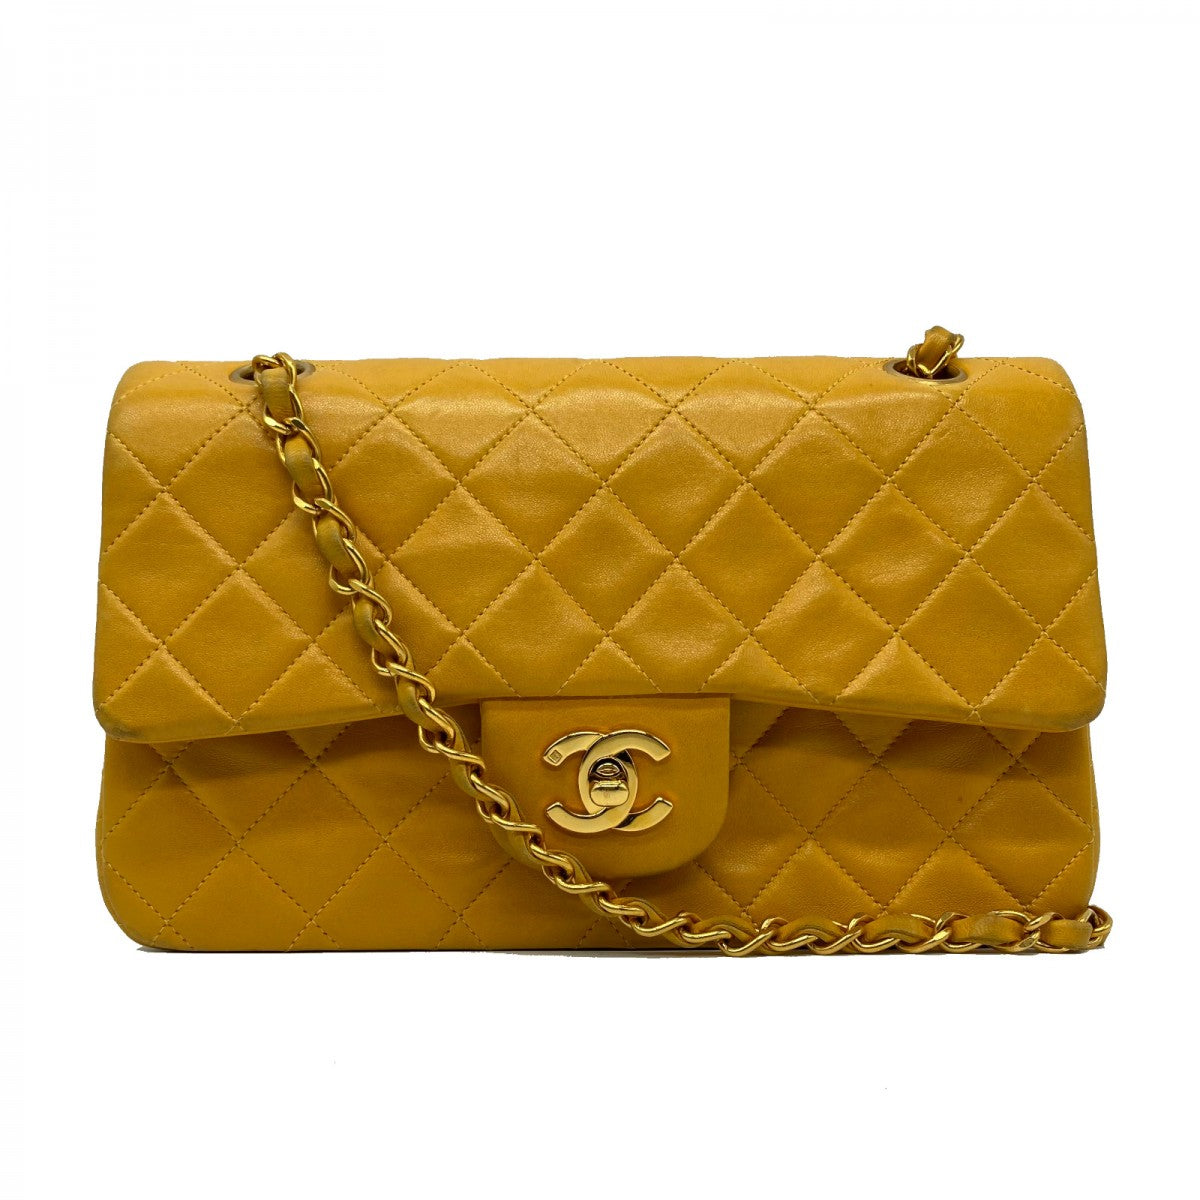 schweizisk Megalopolis statisk Find de smukkeste Chanel tasker her SPLISH